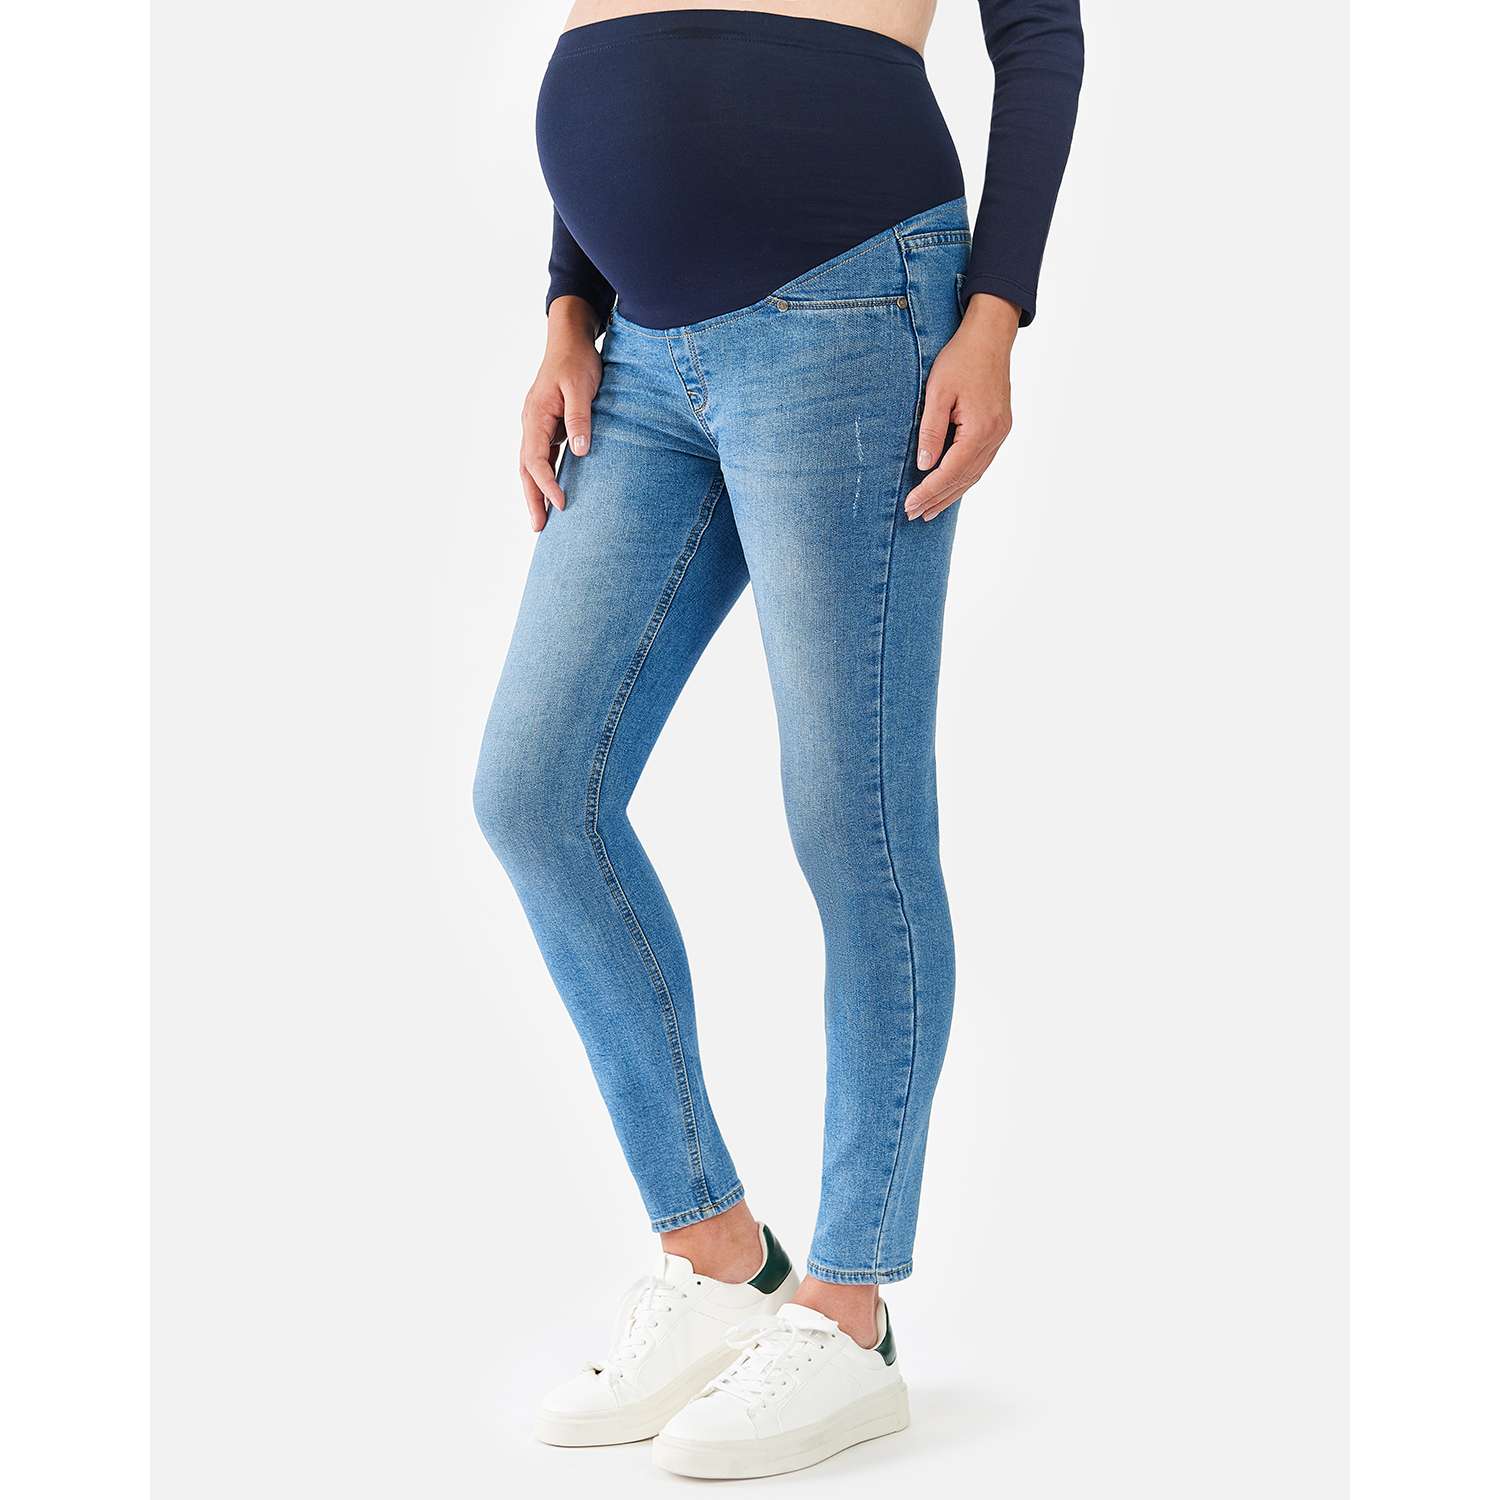 Утеплённые джинсы для беременных Futurino Mama AW21-21-mat-55 - фото 7